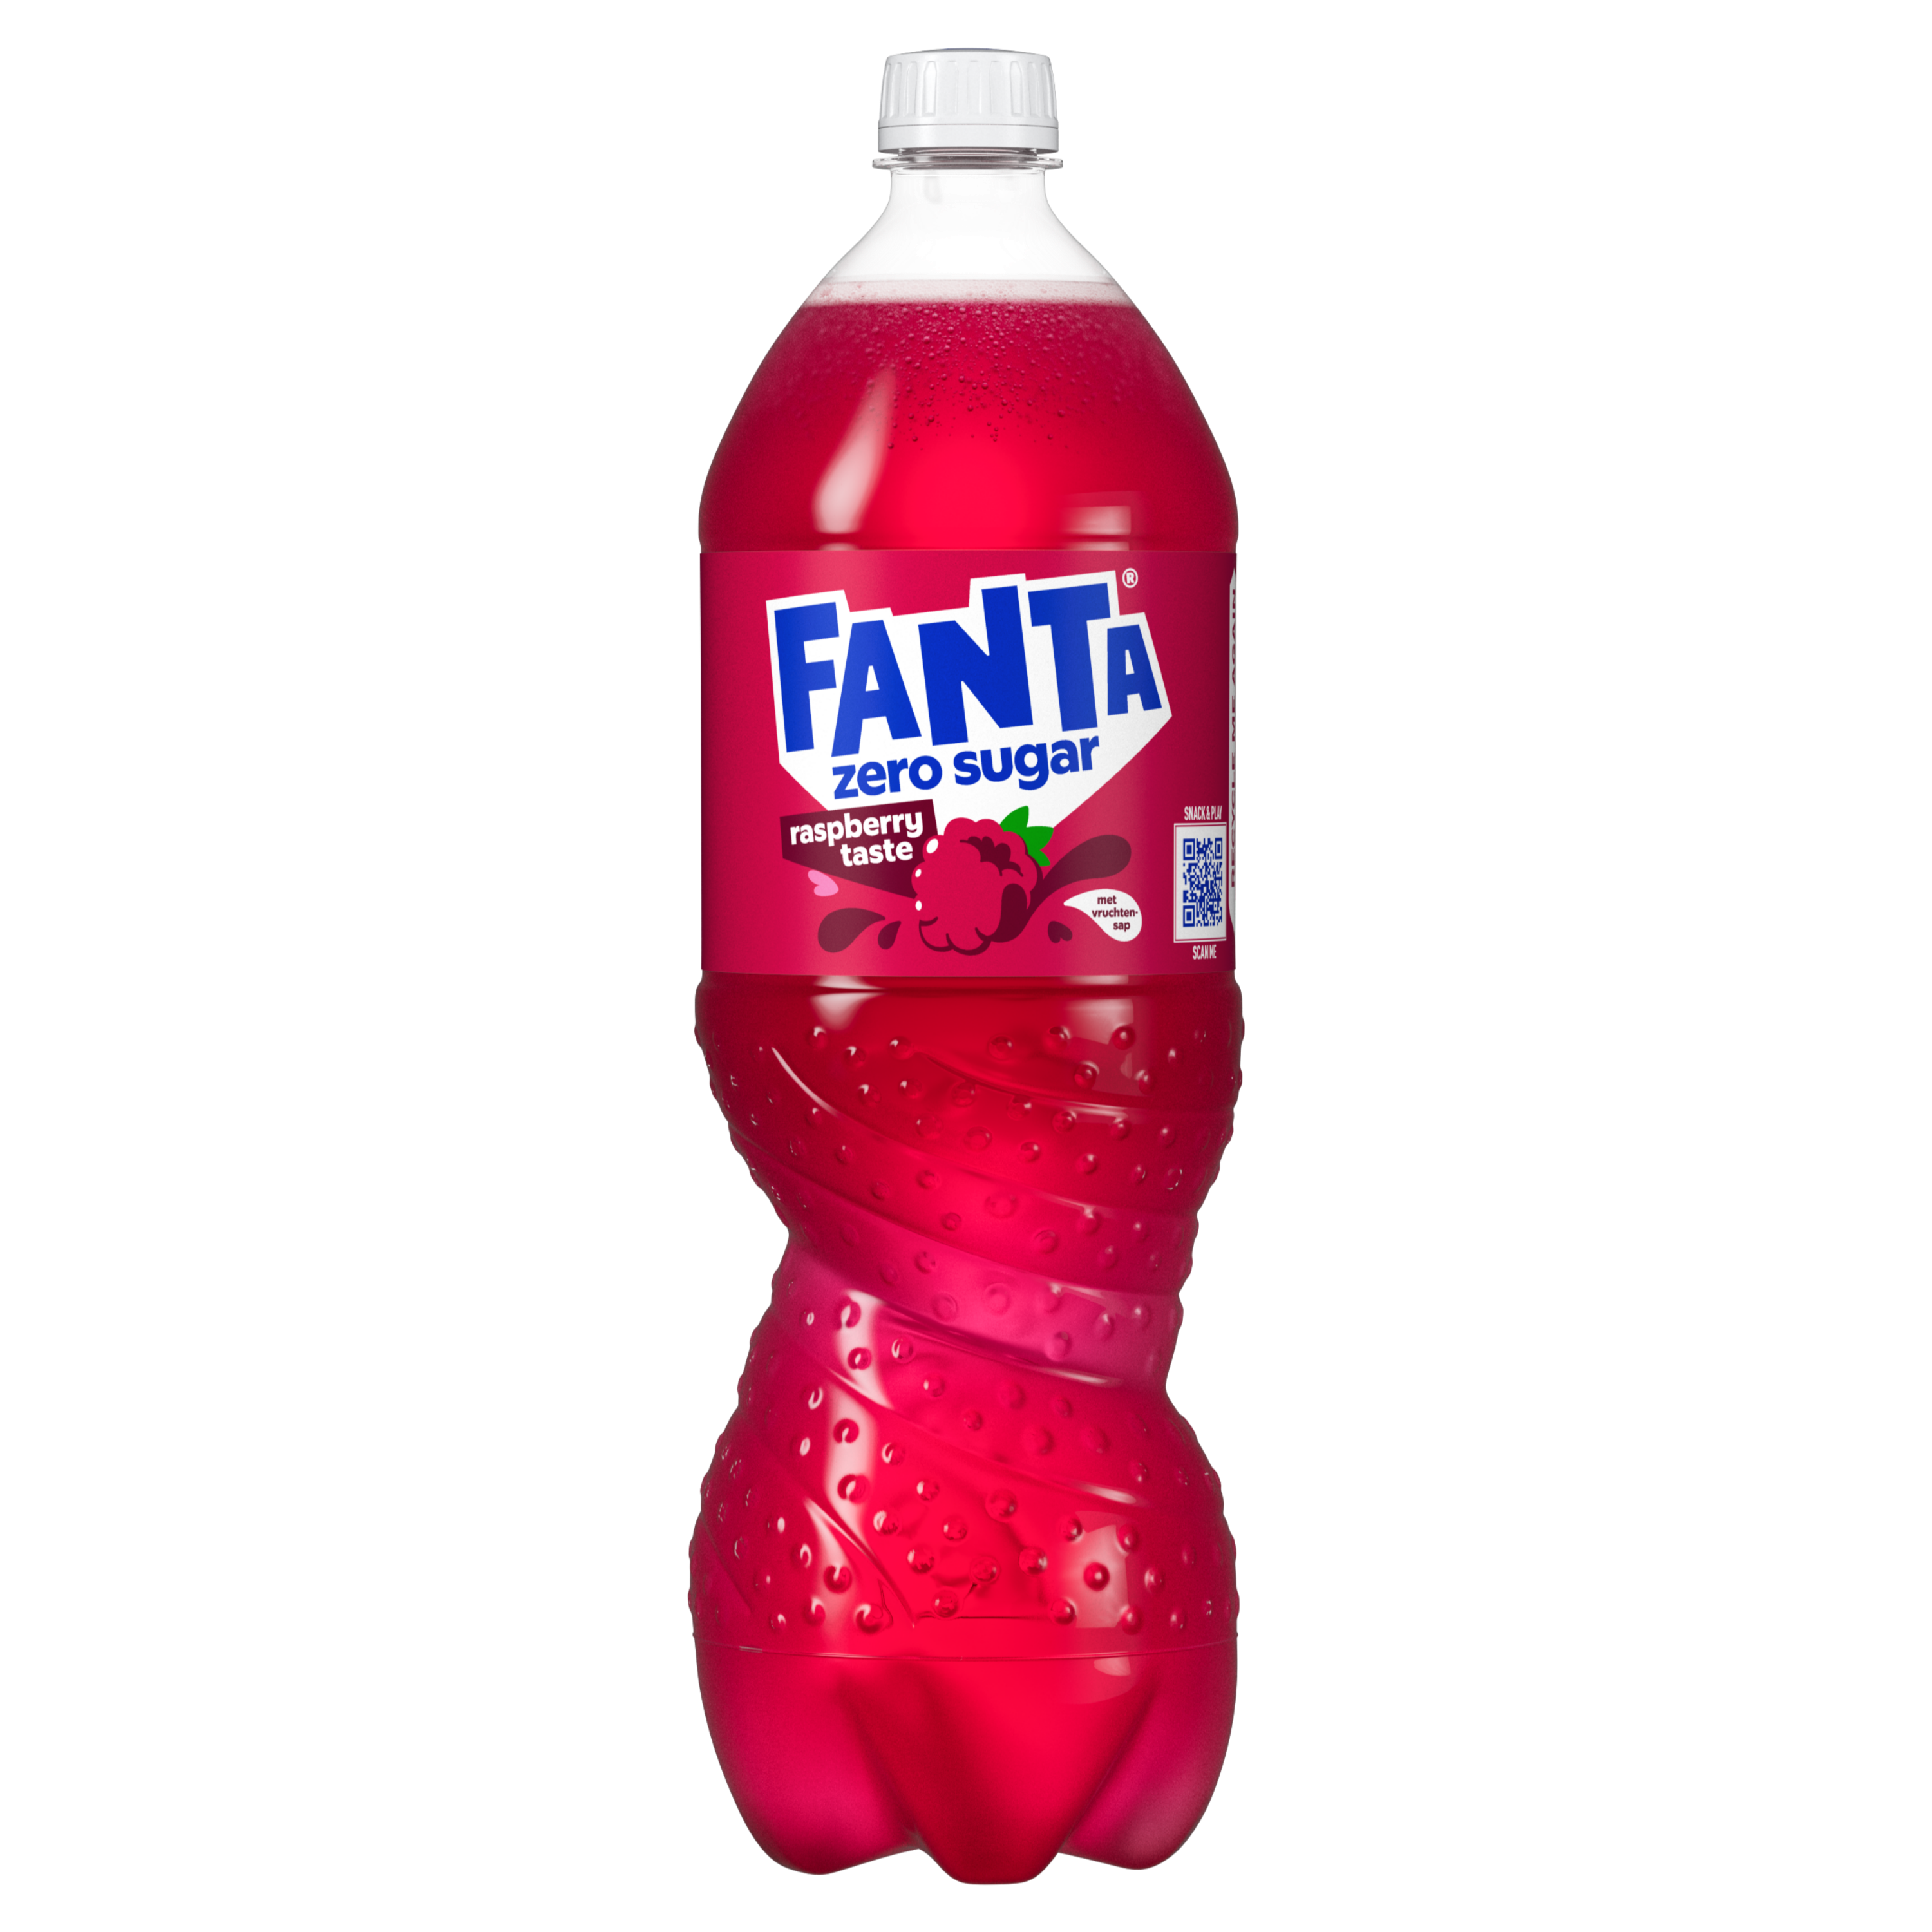 Een fles Fanta zero sugar raspberry taste drank